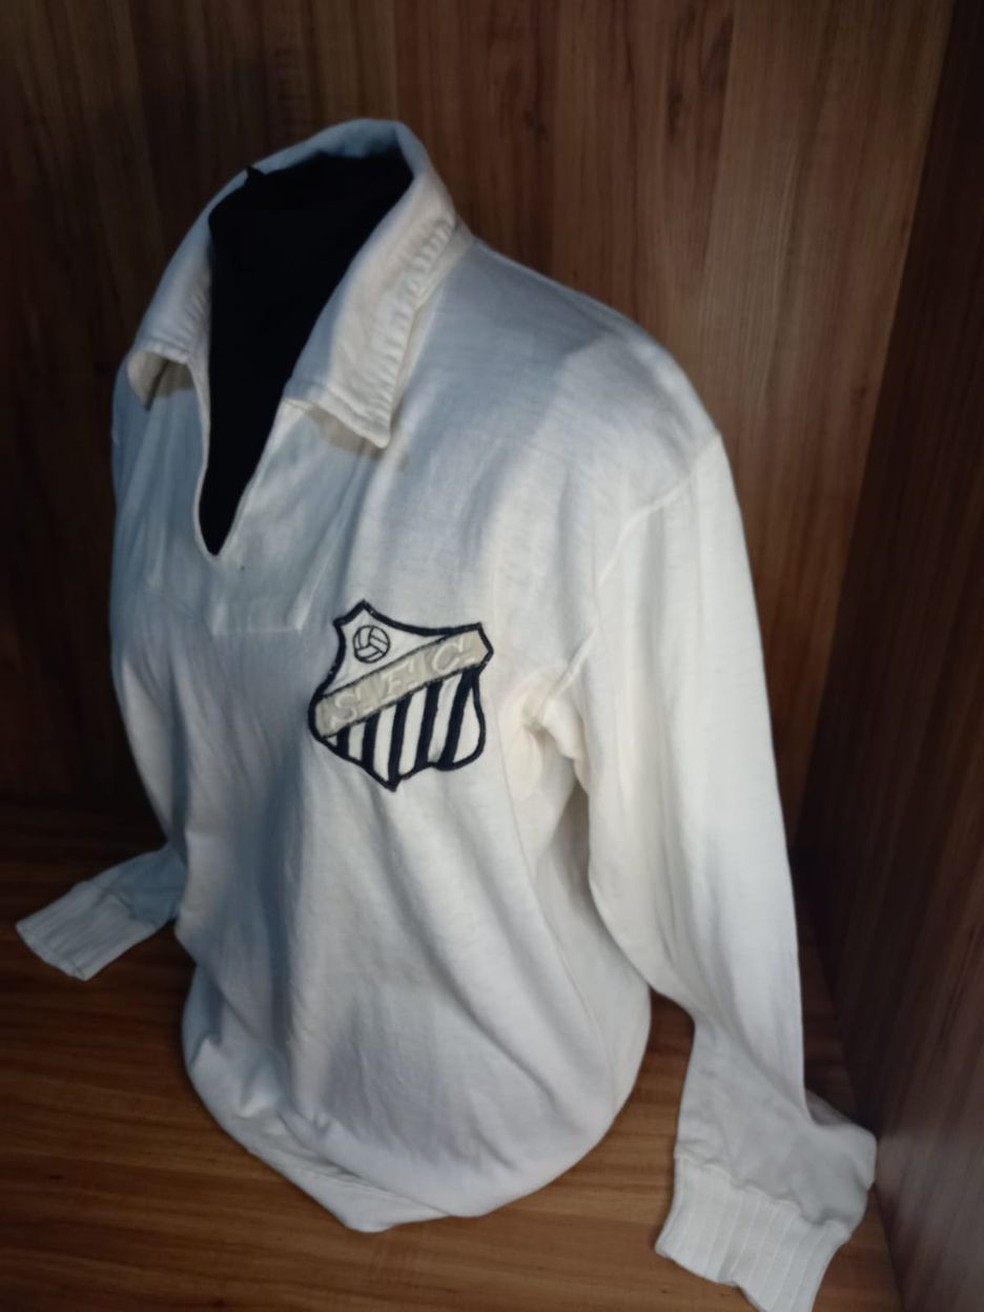 Camisa de Pelé que será leiloada por Lincão — Foto: Reprodução/Estadão